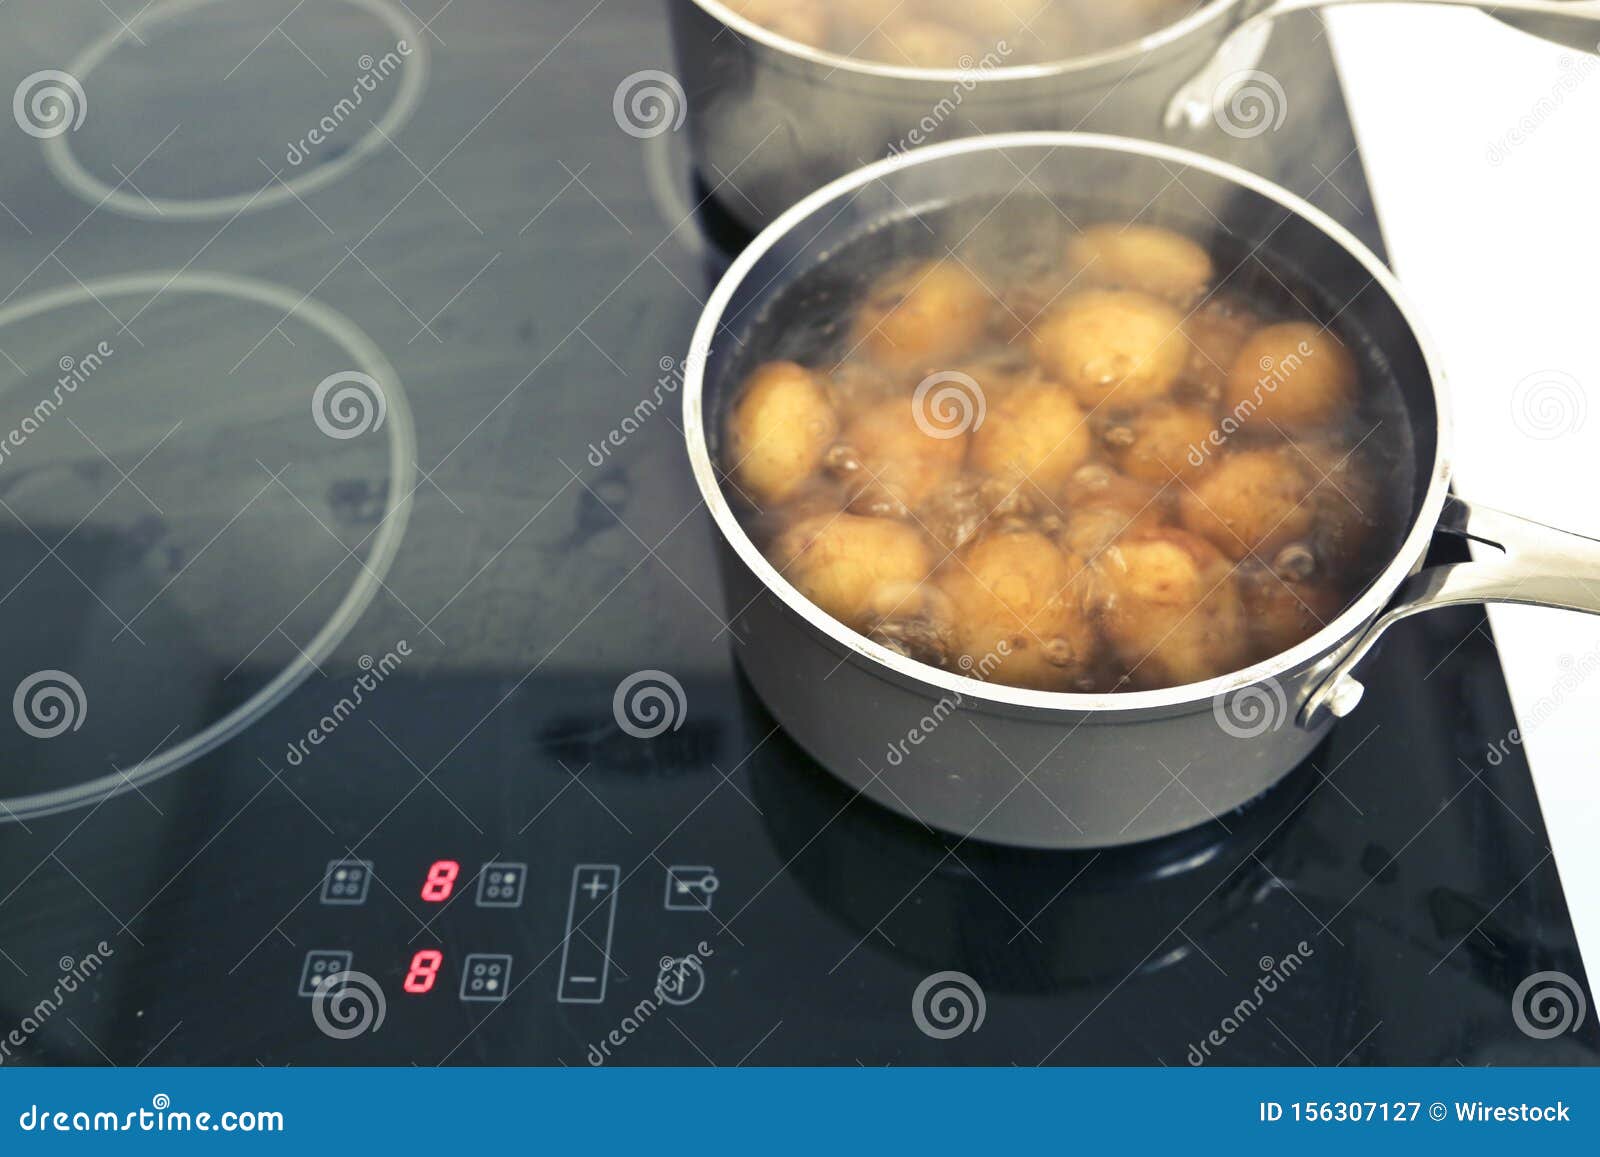 Картошку кидать в кипящую воду. Кипение картошки. Картофель кипит в кастрюле. Картошку готовят на плите. Сохры картошка на плите.